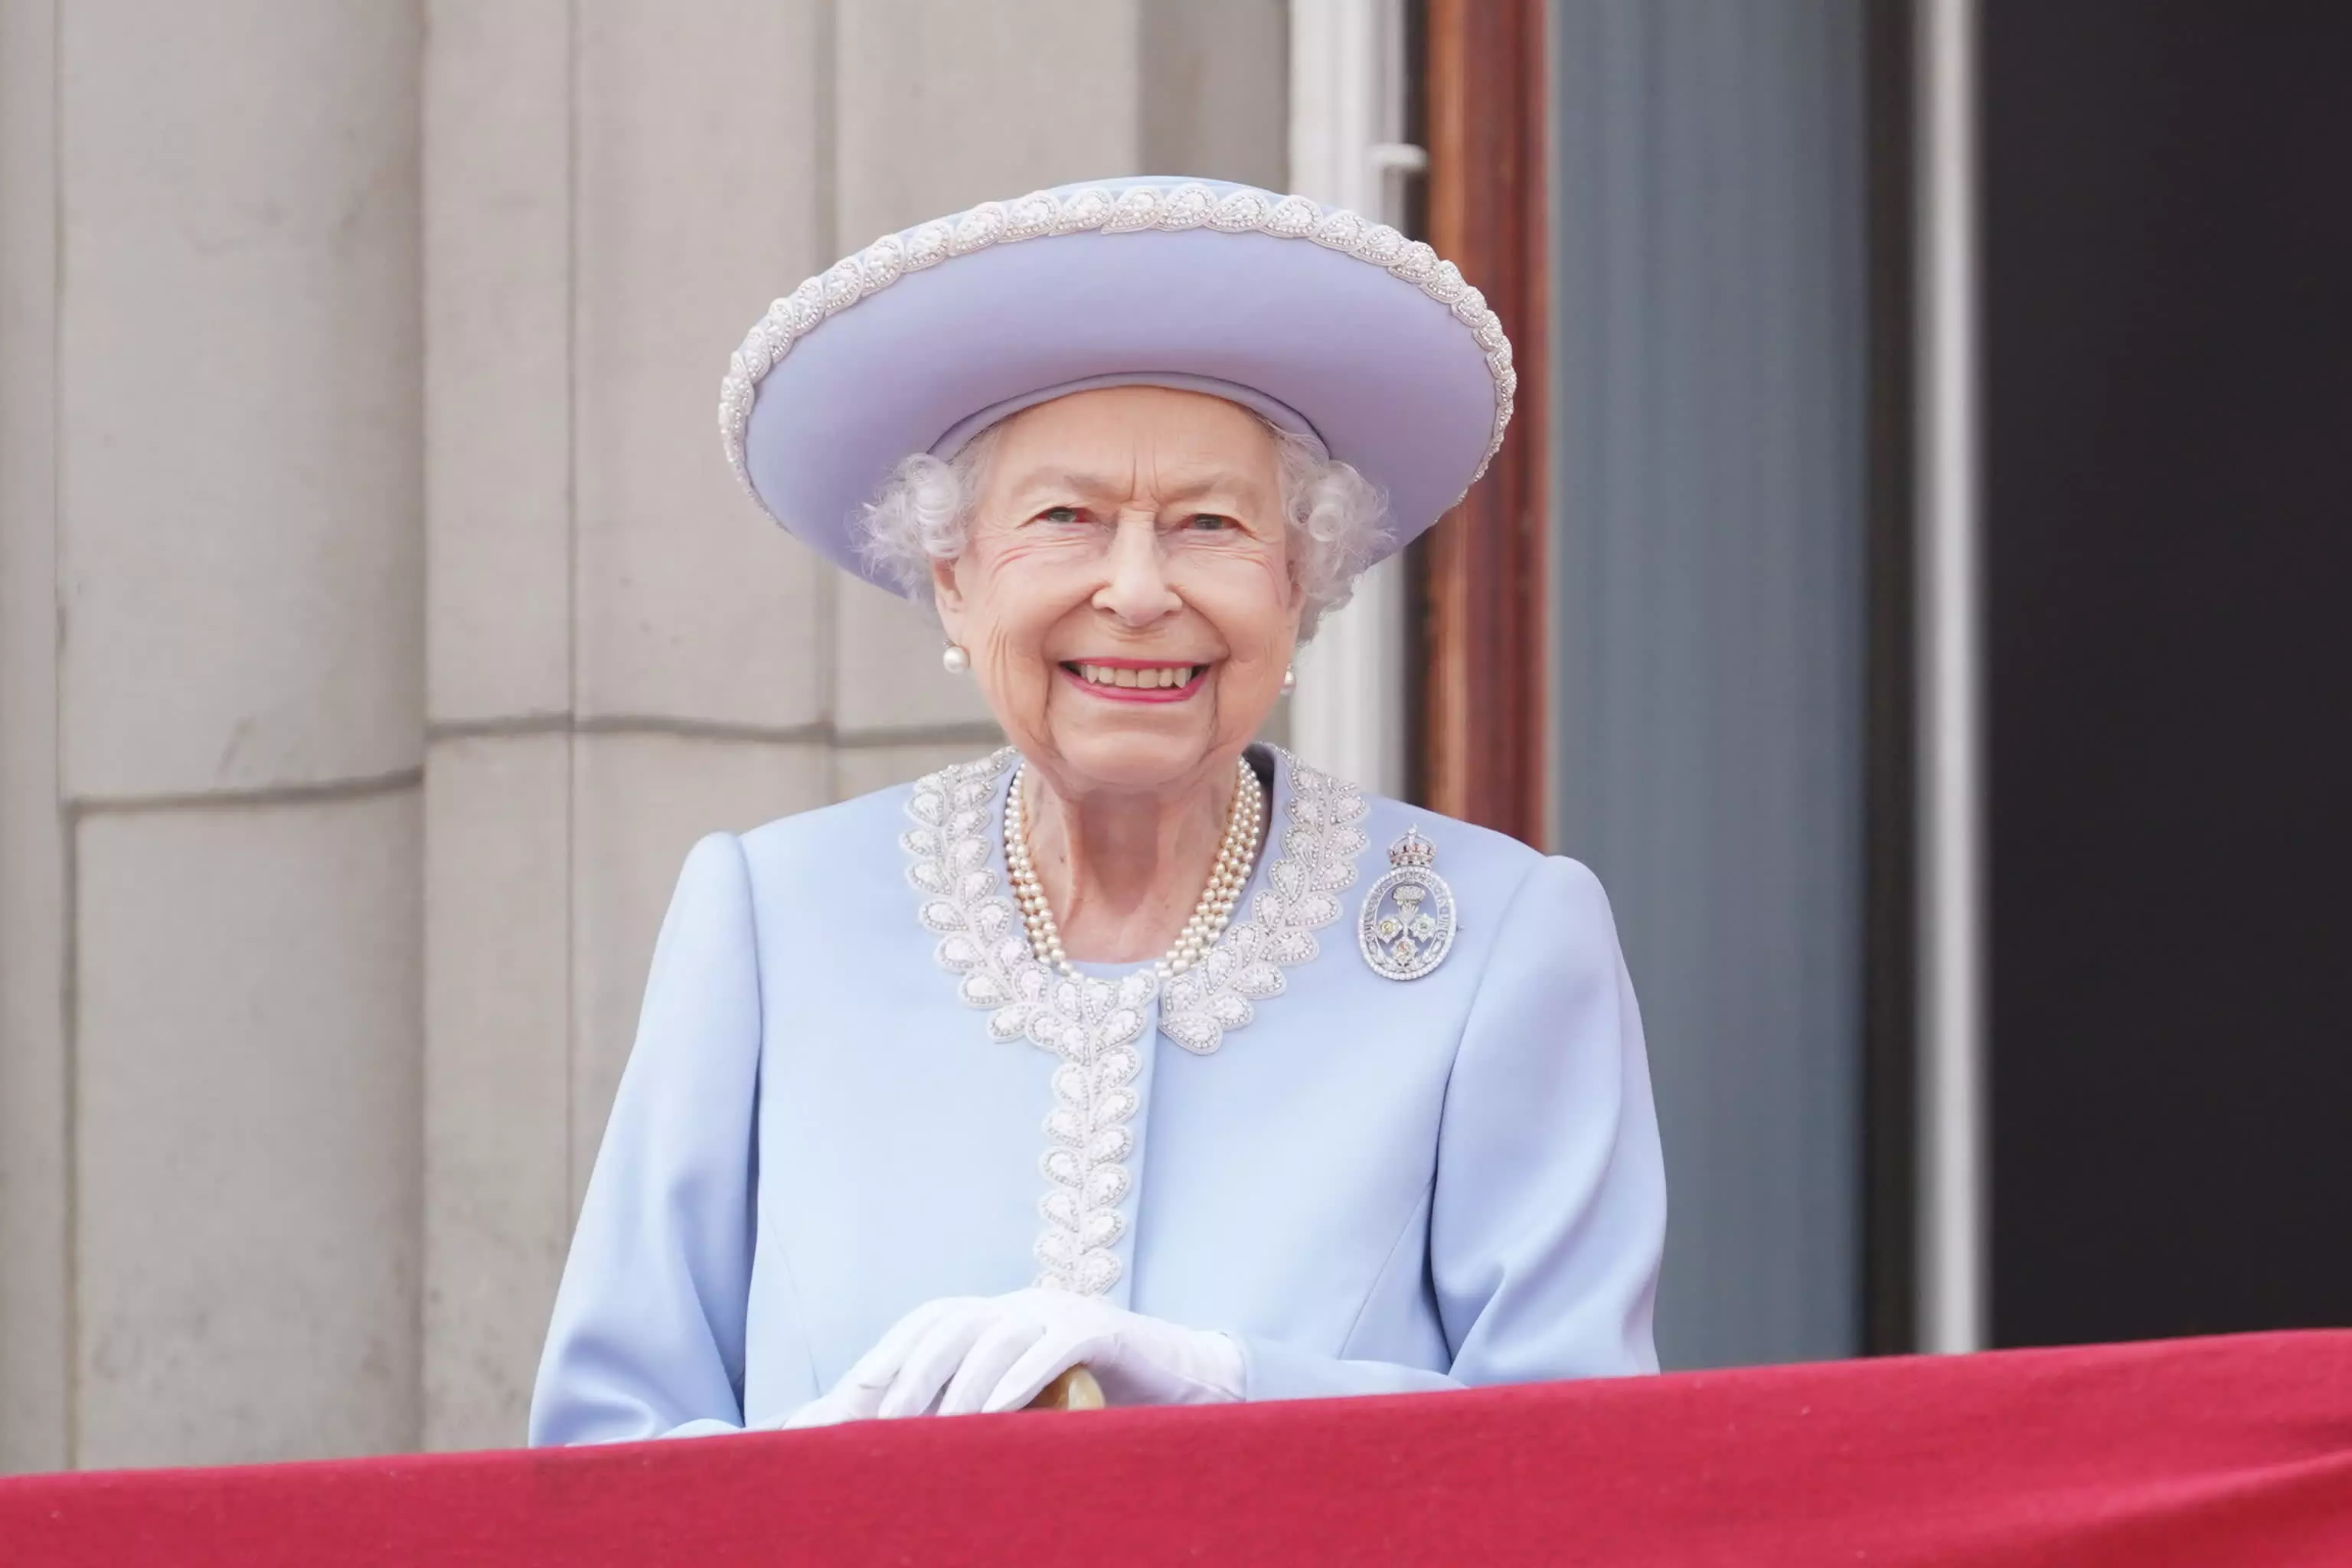 Elizabeth II under medical supervision; doctors express concern